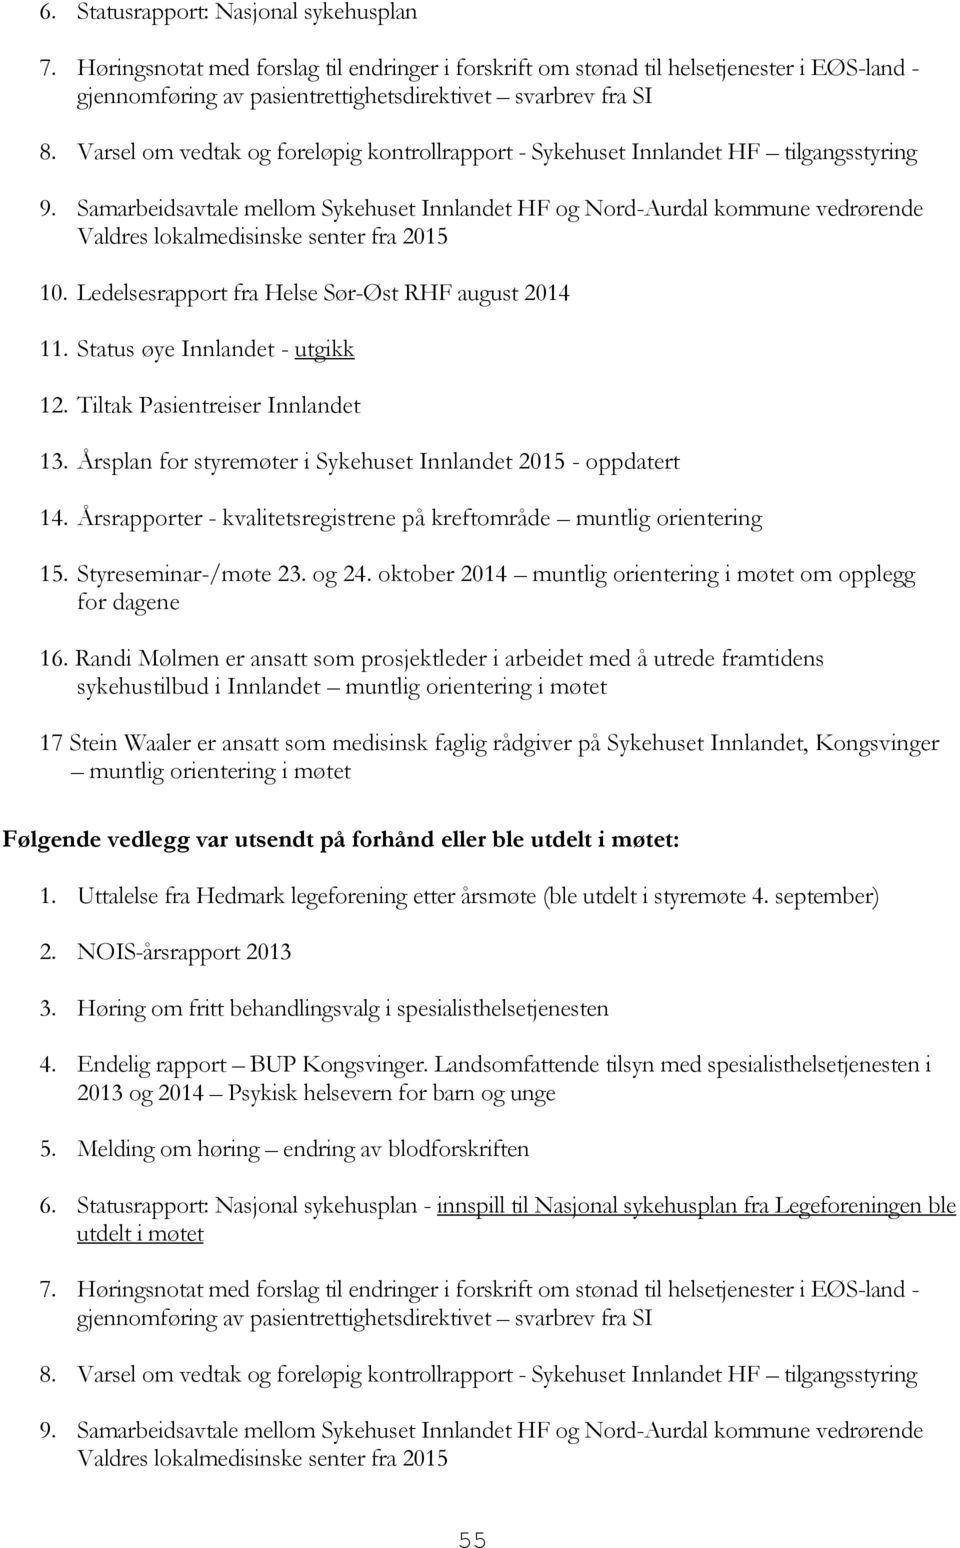 Samarbeidsavtale mellom Sykehuset Innlandet HF og Nord-Aurdal kommune vedrørende Valdres lokalmedisinske senter fra 2015 10. Ledelsesrapport fra Helse Sør-Øst RHF august 2014 11.